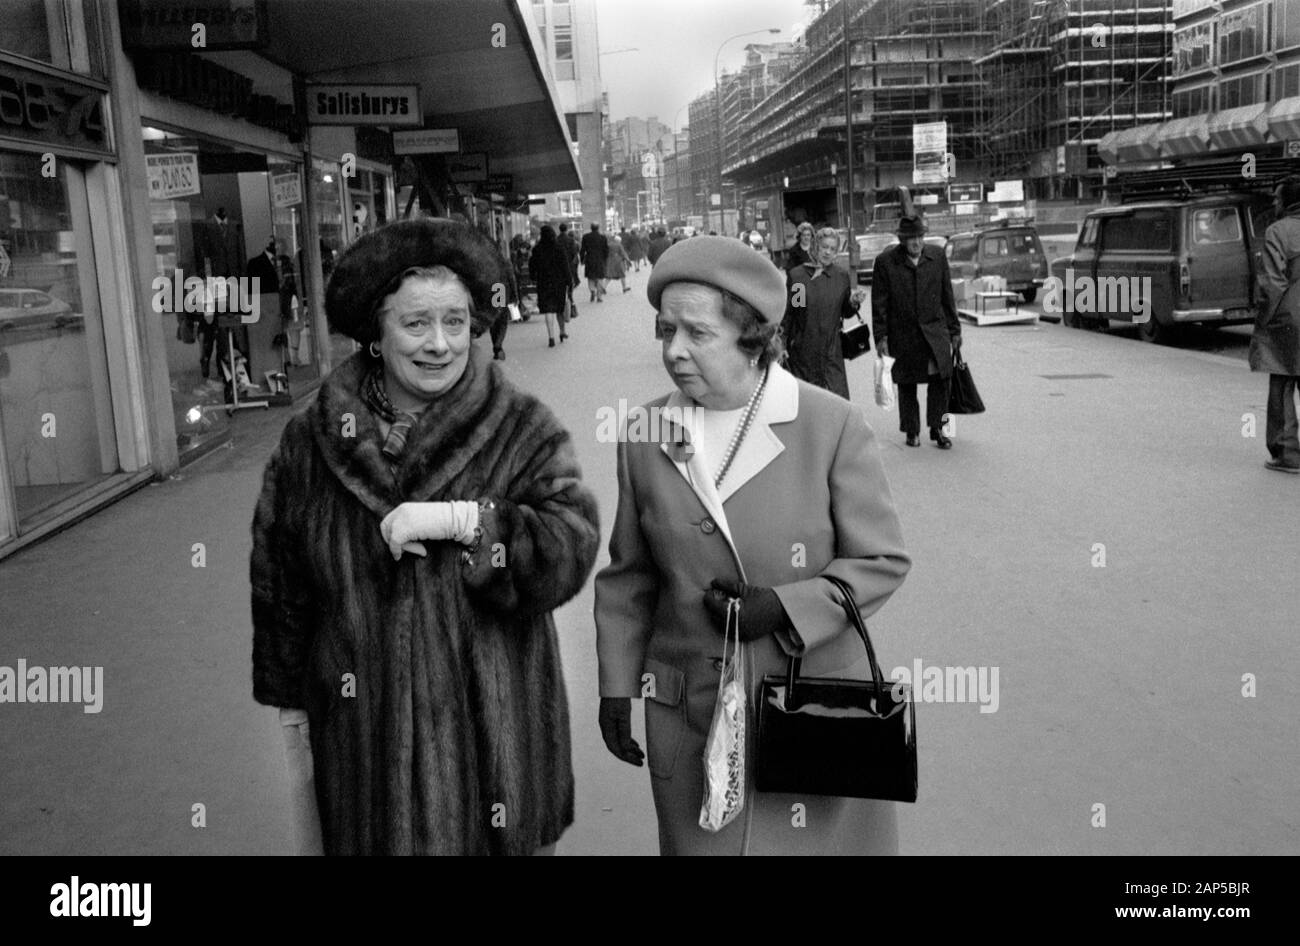 Pelzmantel 1970er UK. Zwei Damen mittleren Alters, die sich beim Einkaufen elegant angezogen haben, eine trägt einen Pelzmantel. Zu Fuß in der Victoria Street. Victoria, London, England 1976. HOMER SYKES Stockfoto